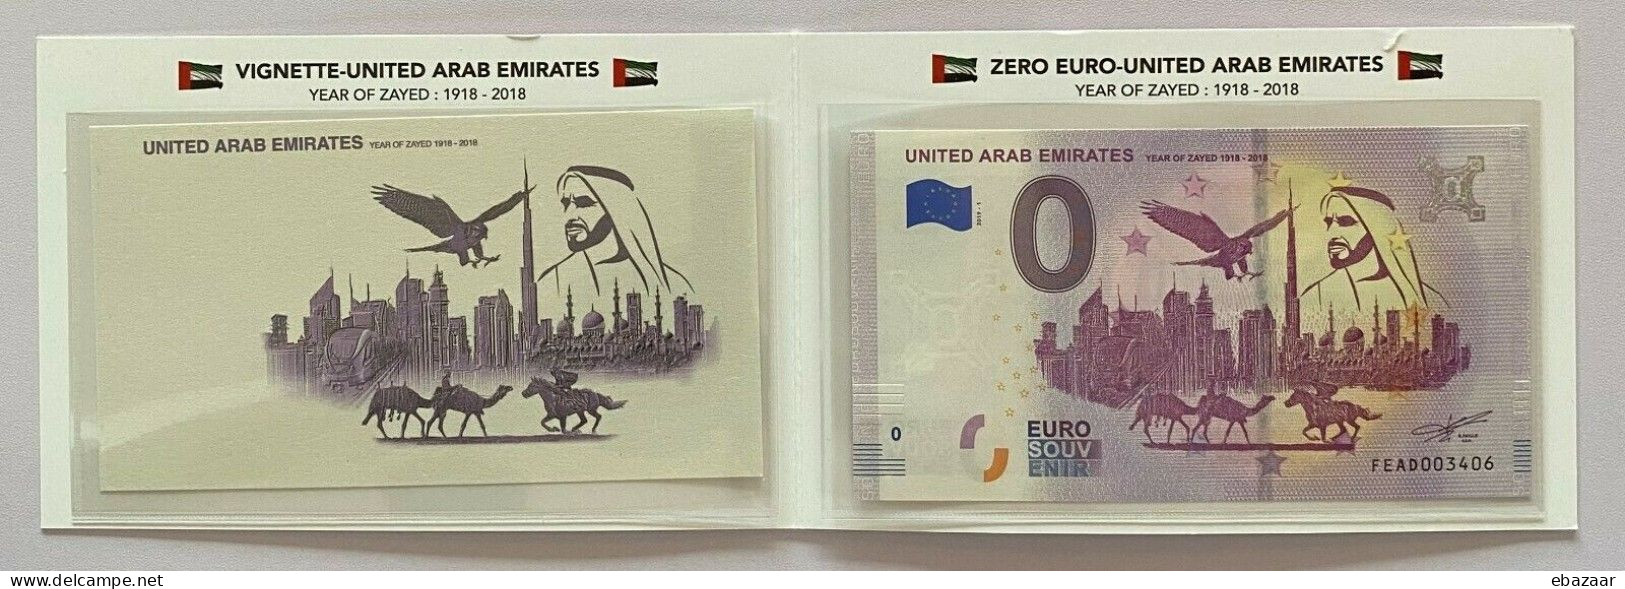 United Arab Emirates 2019 UAE Zero Euro Banknotes 0 Euro Year Of Zayed + Vignette In Folder UNC - Privatentwürfe